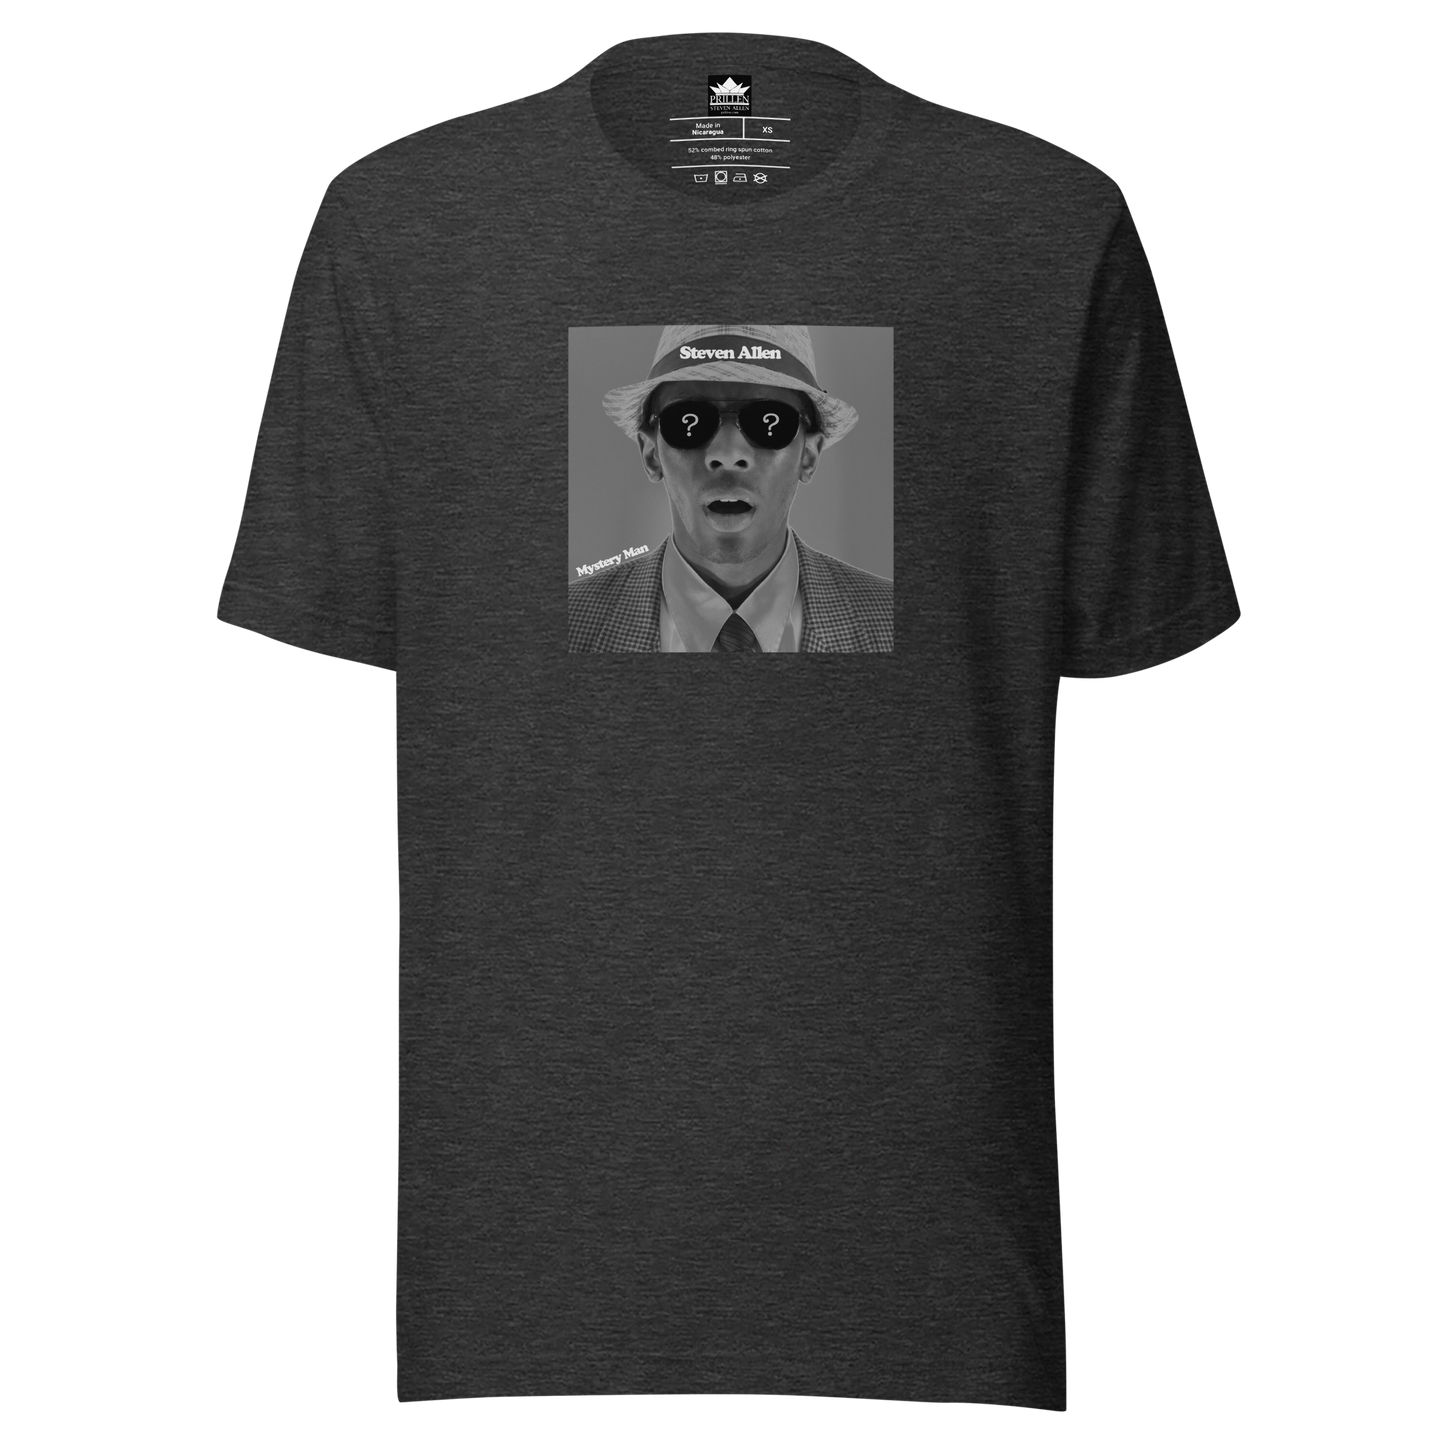 Prillen - Steven Allen - Mystery Man - Music T-Shirt